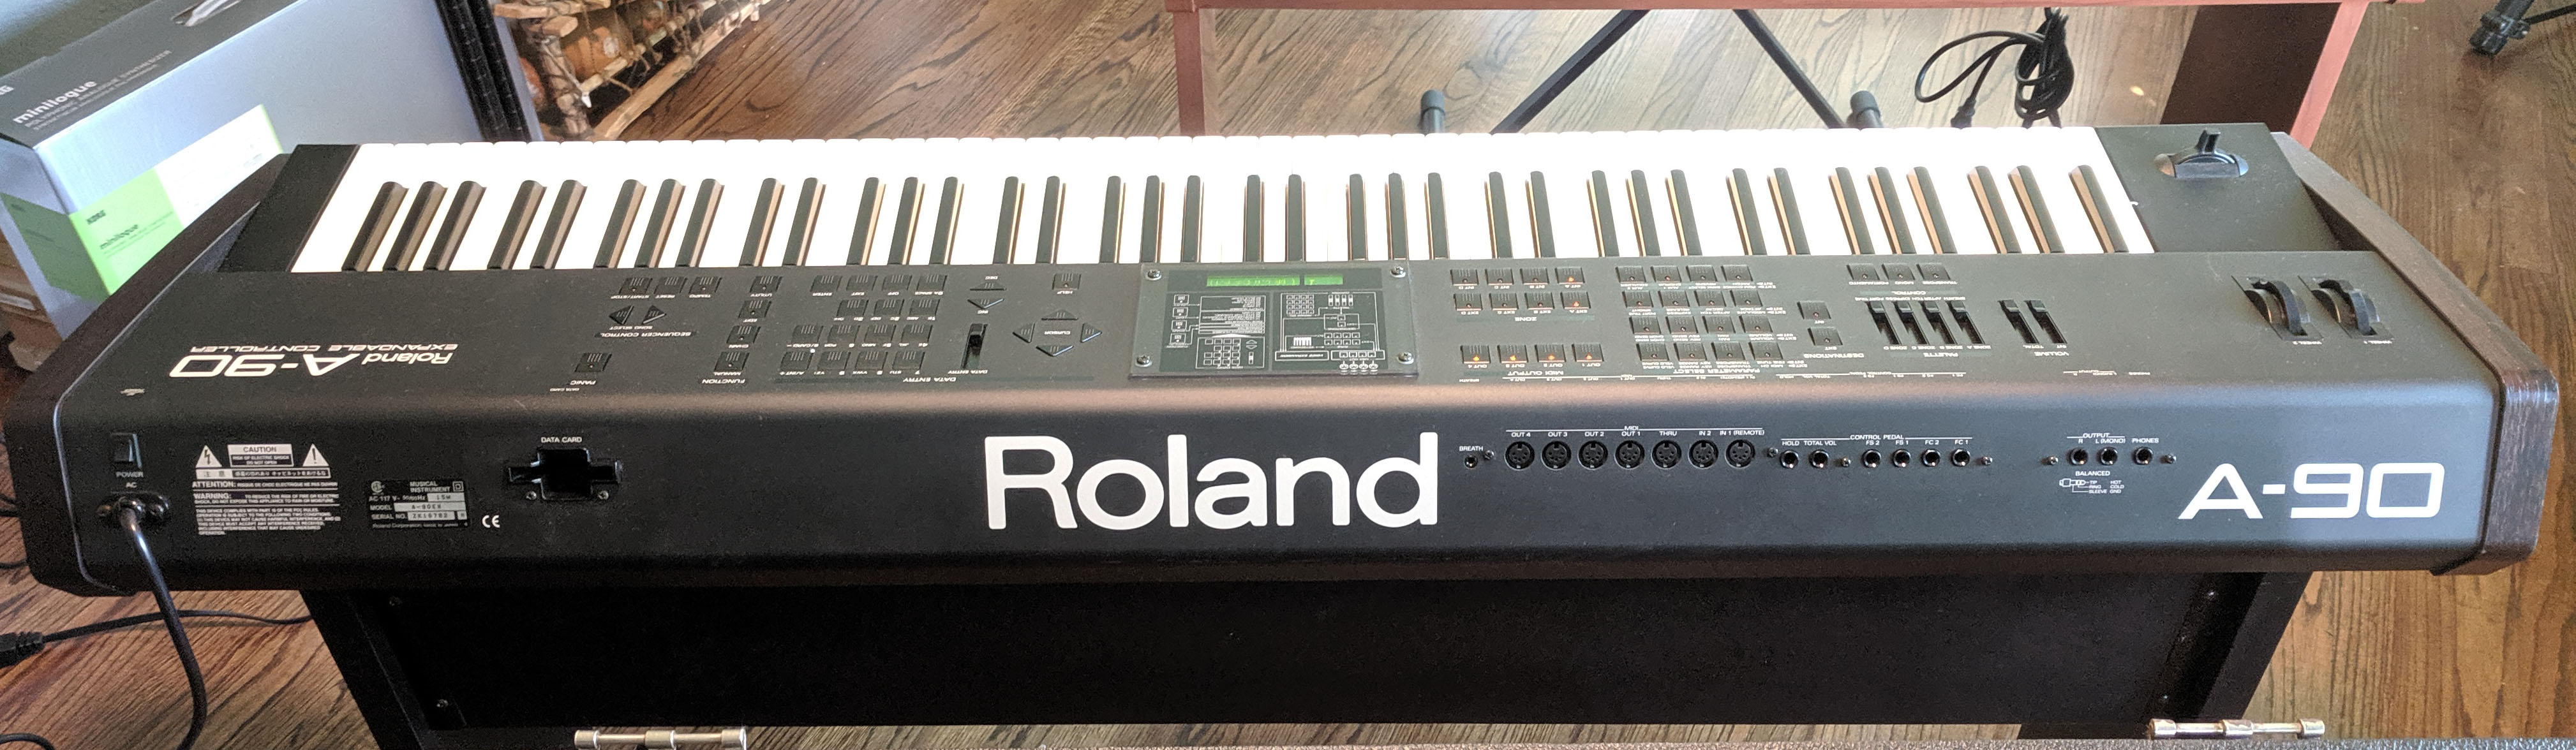 Roland A-90, A-90 EX